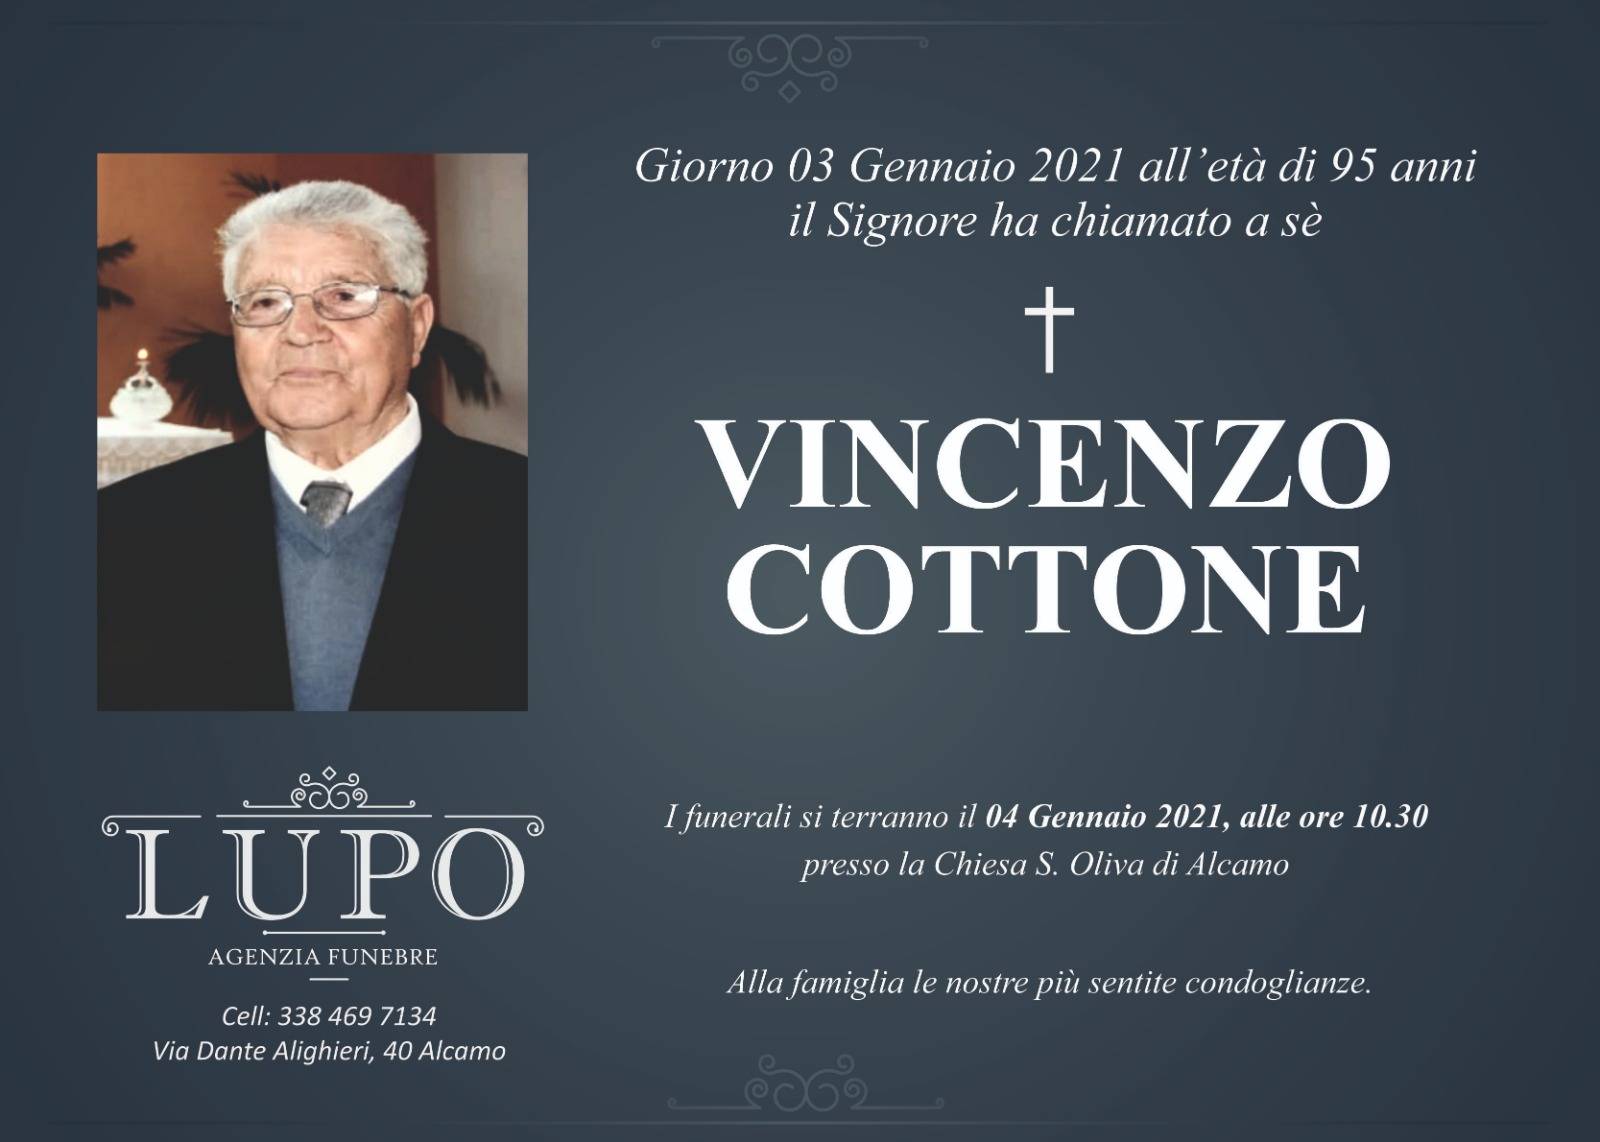 Vincenzo Cottone